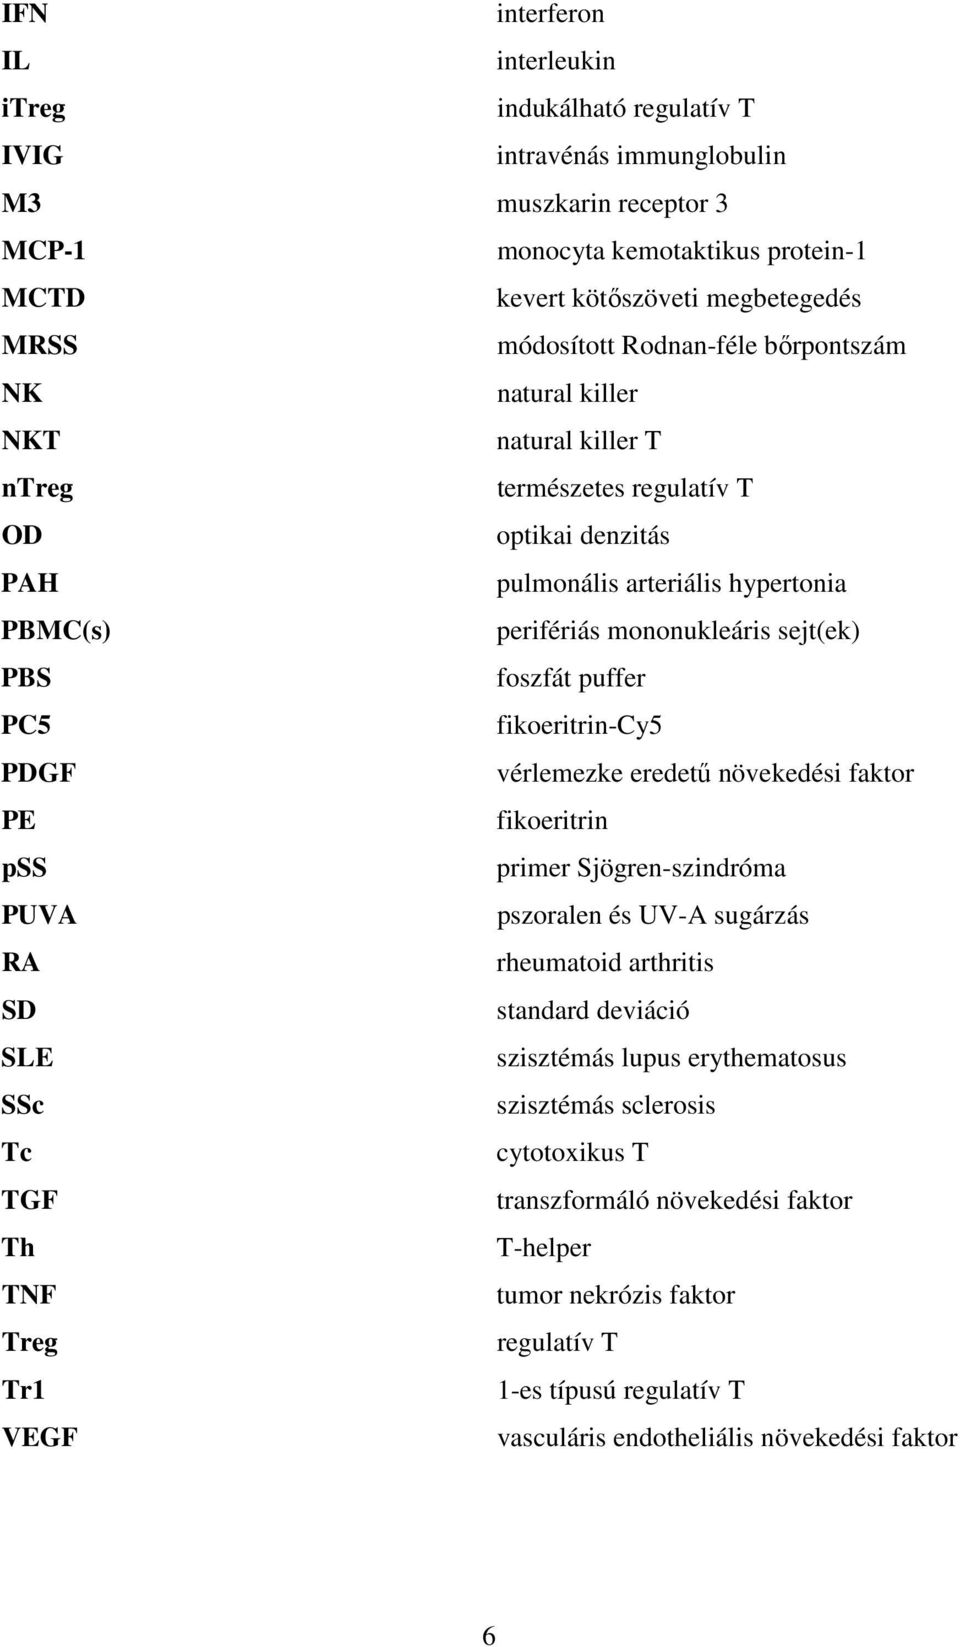 sejt(ek) PBS foszfát puffer PC5 fikoeritrin-cy5 PDGF vérlemezke eredetű növekedési faktor PE fikoeritrin pss primer Sjögren-szindróma PUVA pszoralen és UV-A sugárzás RA rheumatoid arthritis SD